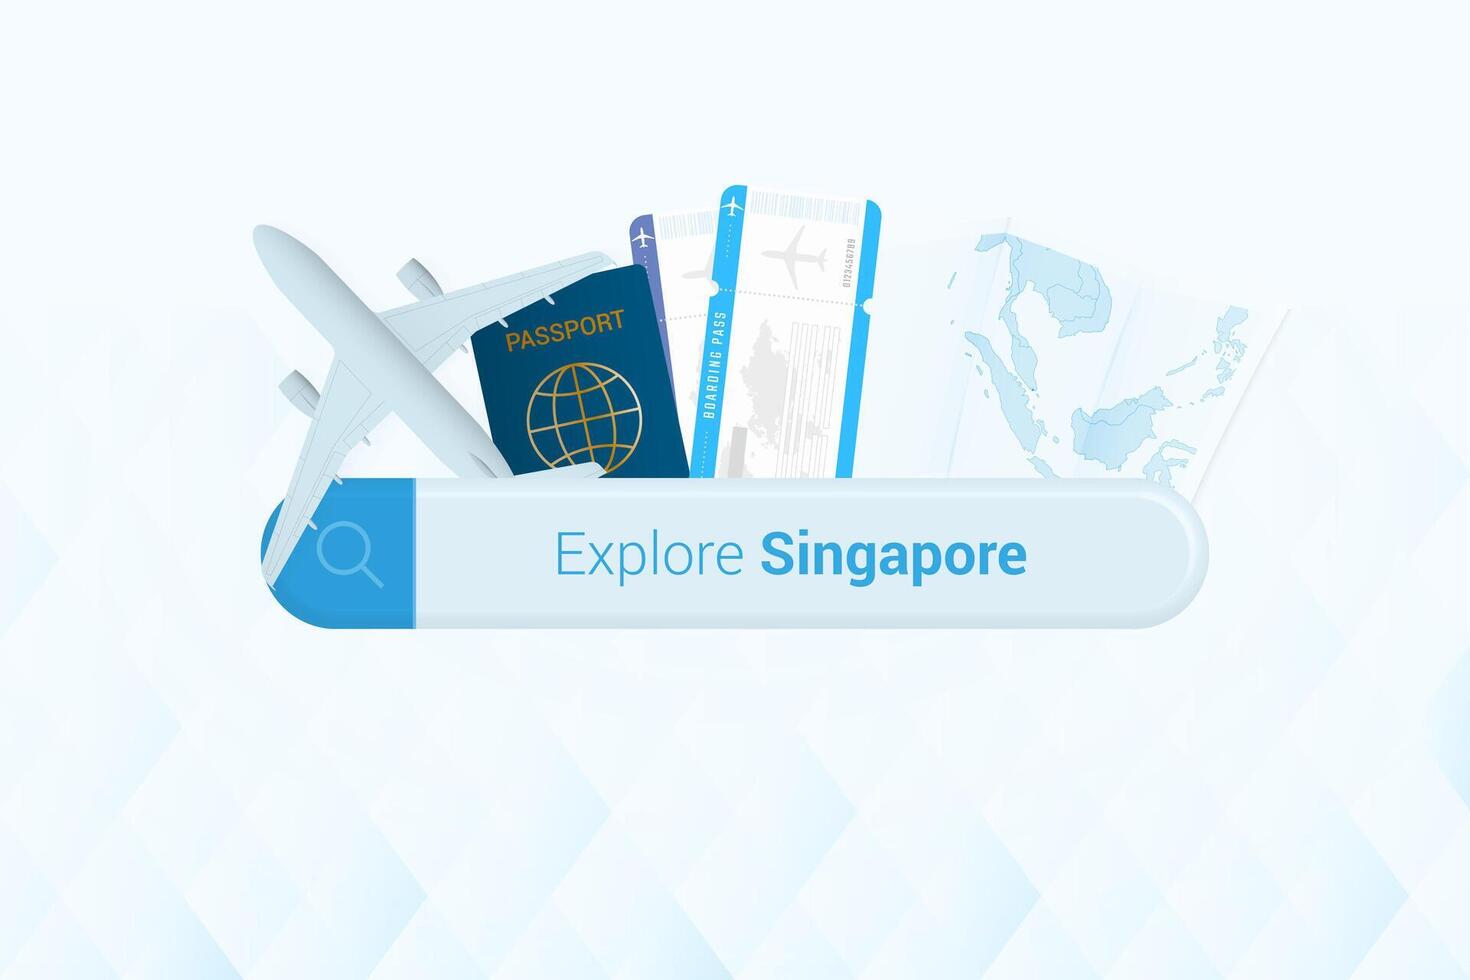 recherche des billets à Singapour ou Voyage destination dans Singapour. recherche bar avec avion, passeport, embarquement passer, des billets et carte. vecteur